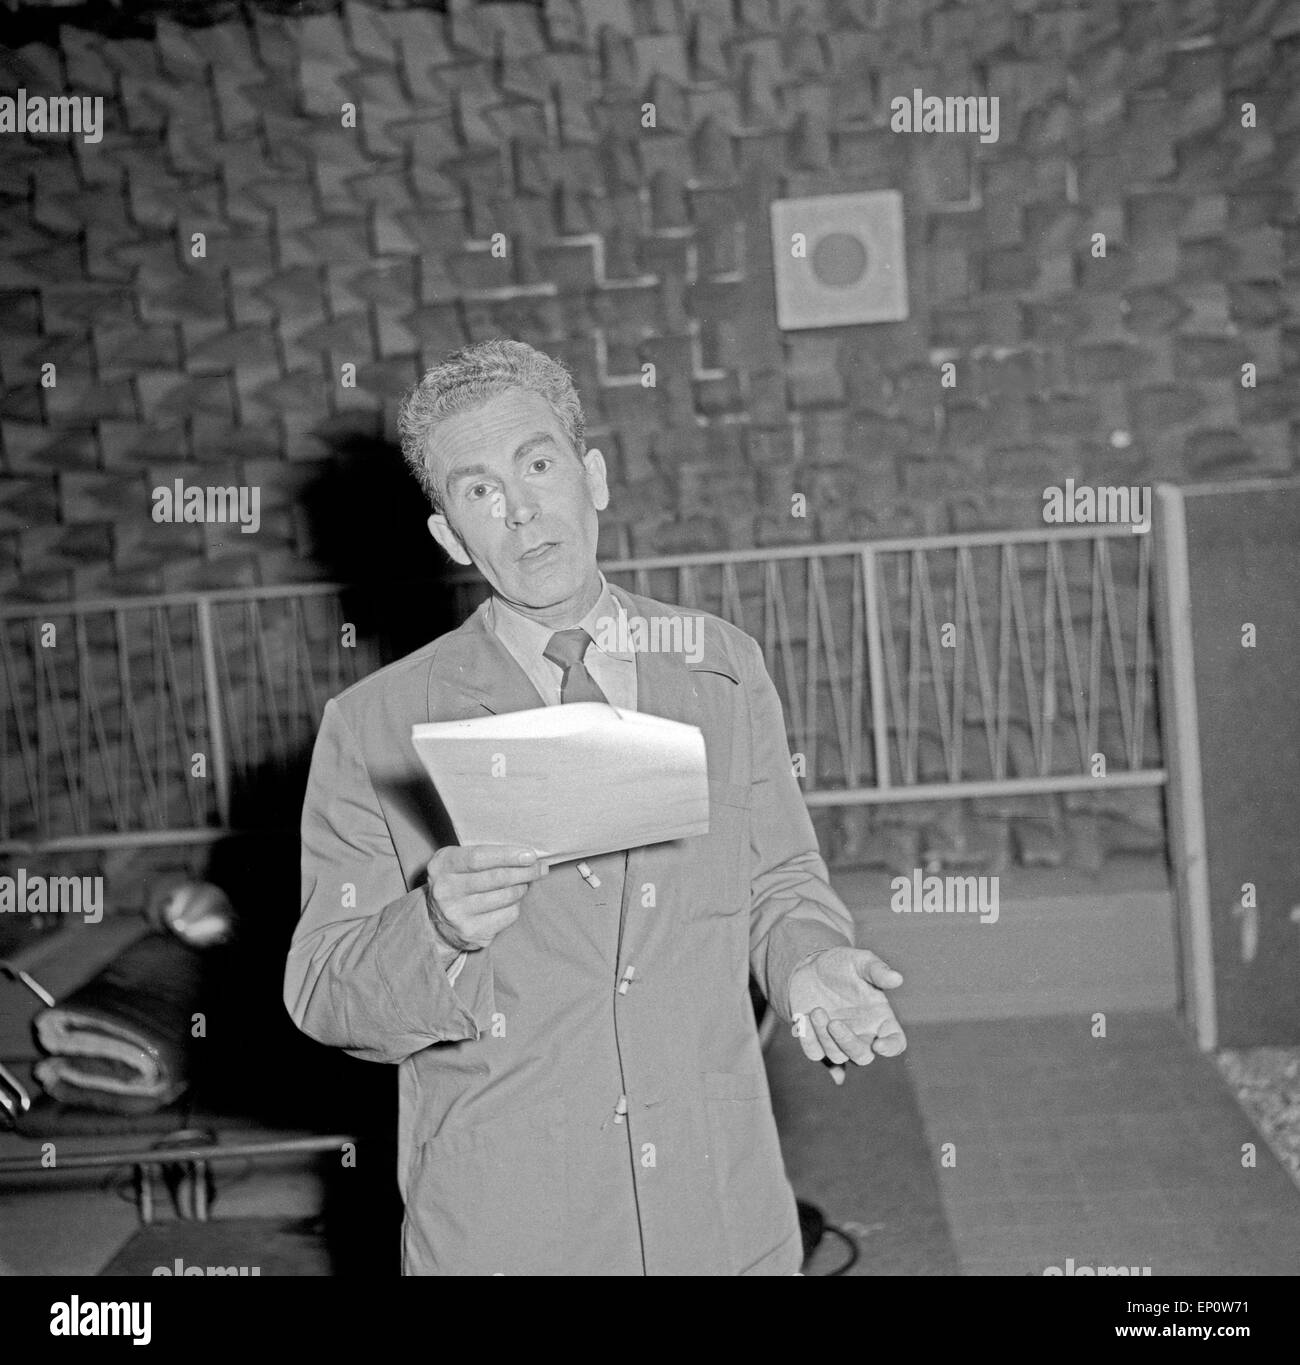 Wilhelm Wieben (?) als Sprecher in einer Hörspielproduktion des NDR, Deutsclhland 1950er Jahre. Later German news presenter Wilh Stock Photo